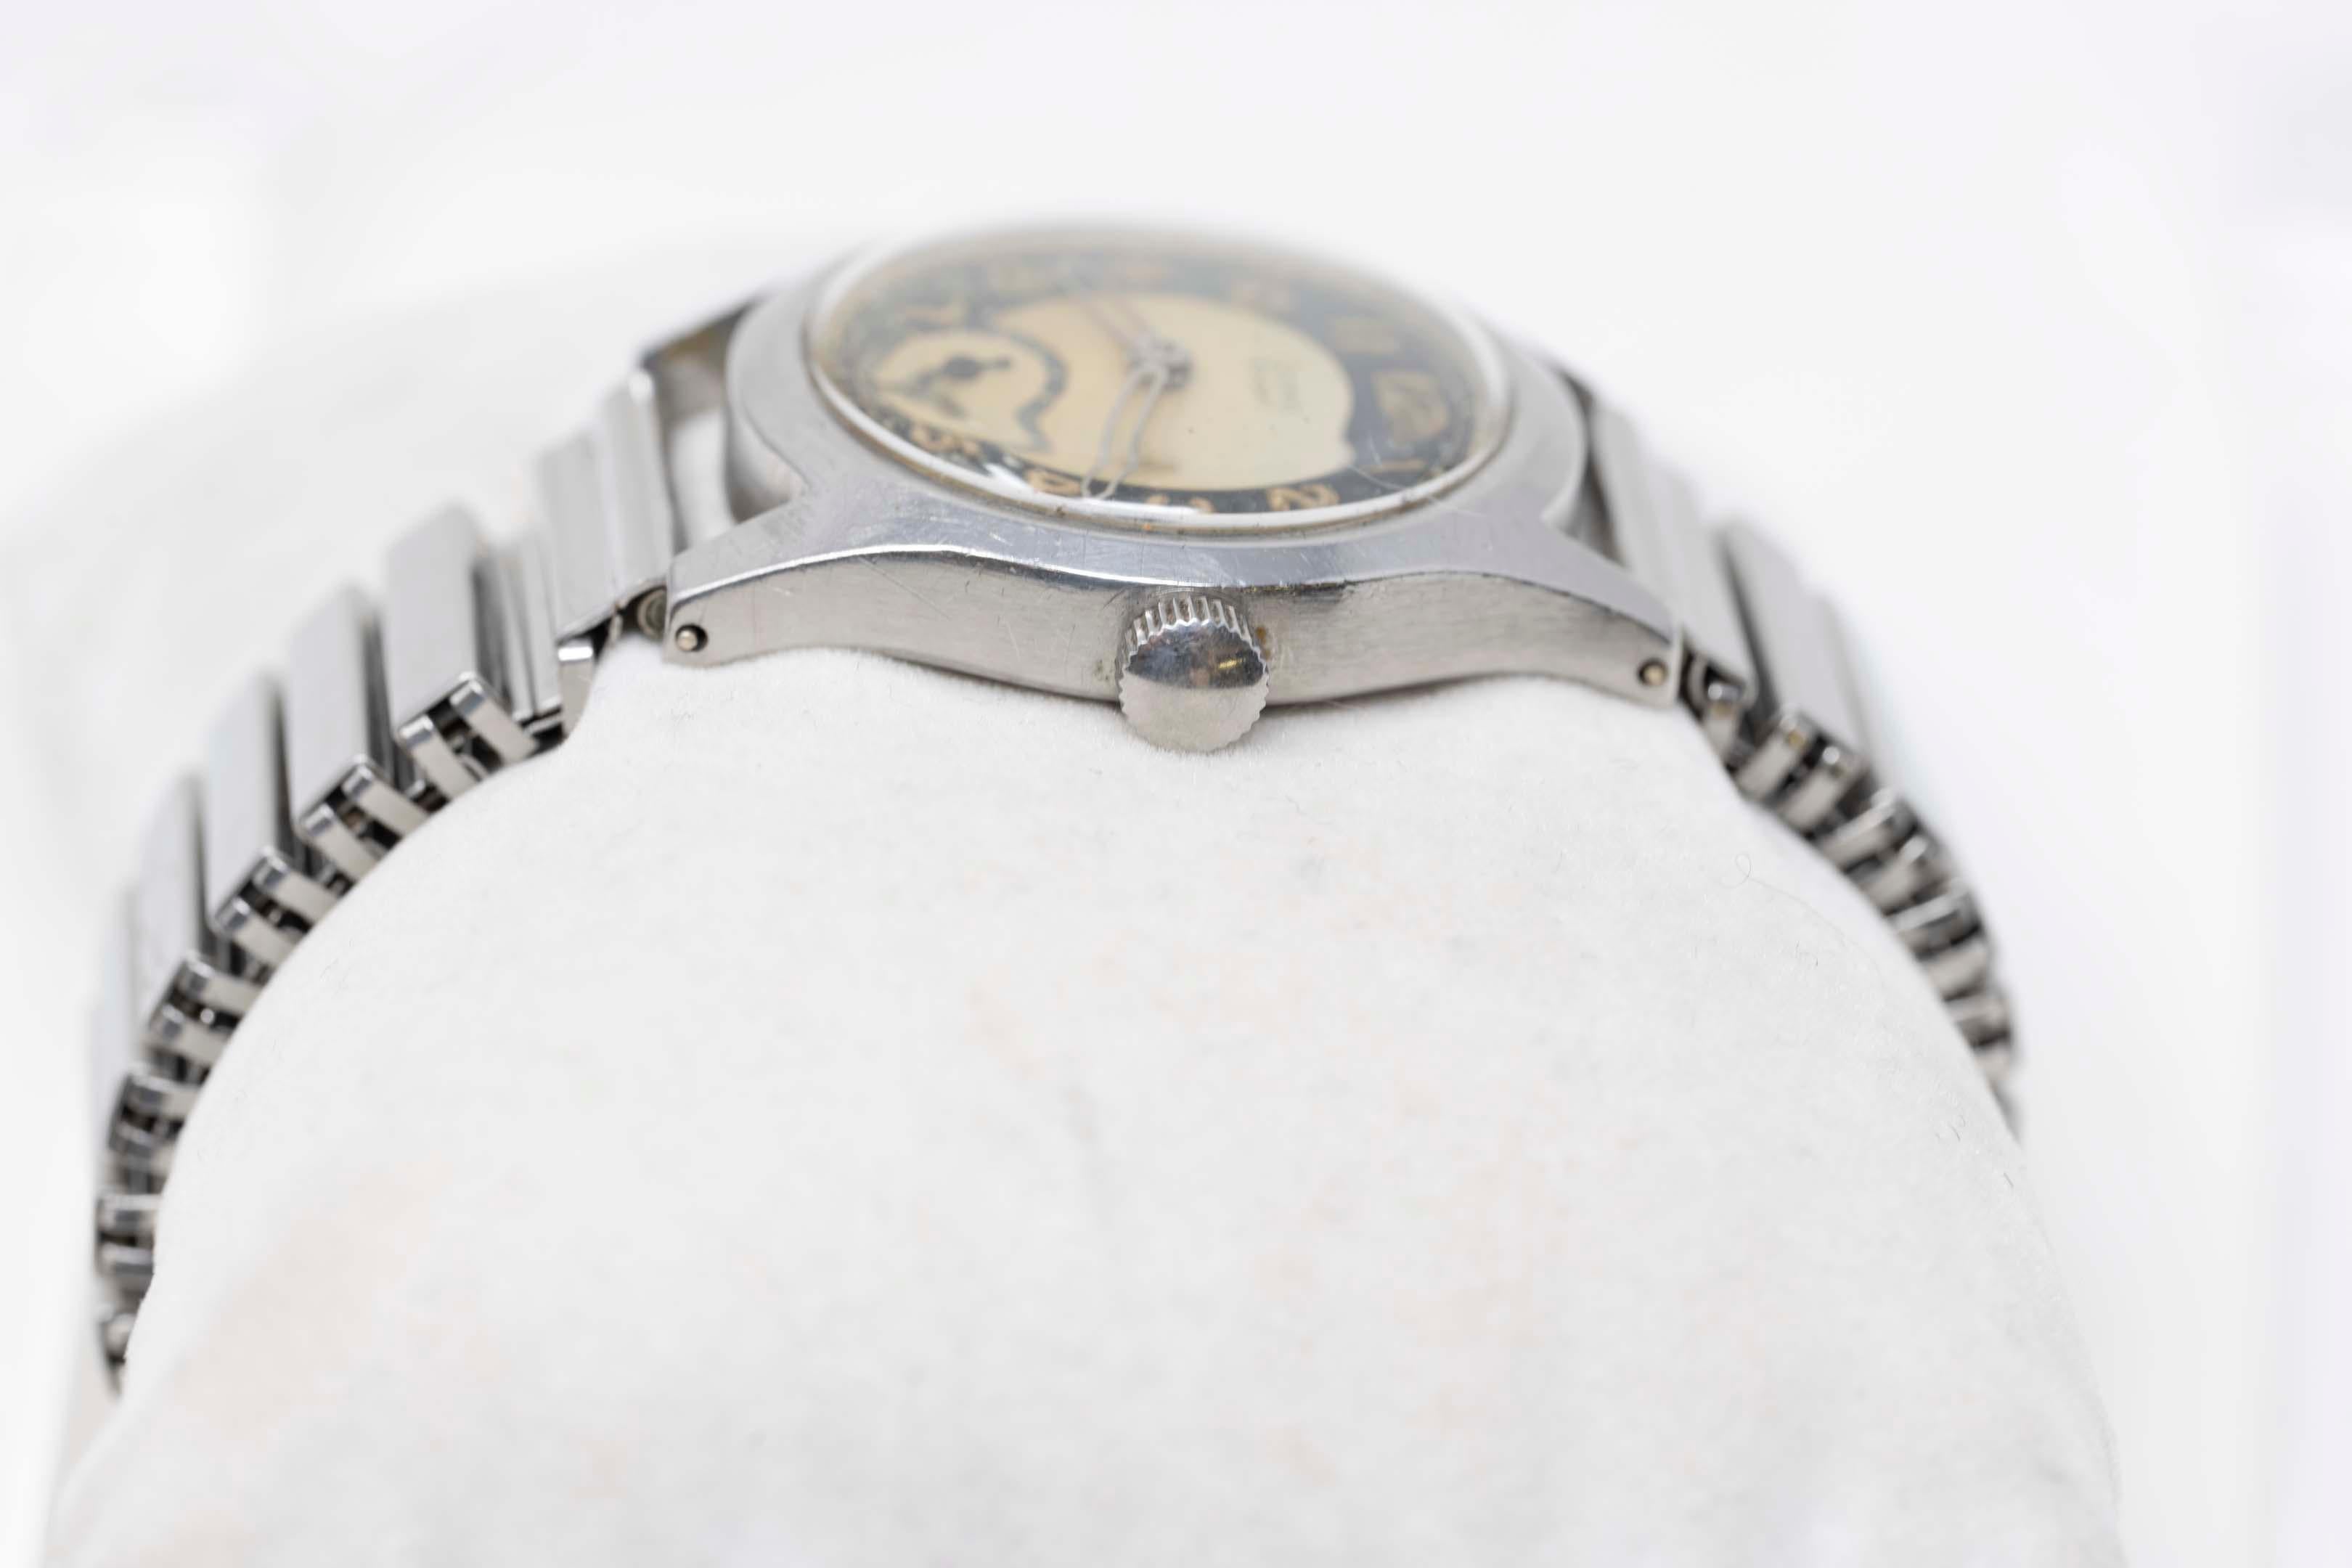 WW2 Grana Sport Uhr mit mechanischem Uhrwerk und Fixoflex-Armband aus Edelstahl. Fall misst 29mm ohne Krone, gutes Funktionieren, Genauigkeit nicht garantiert gravierte Widmung auf der Rückseite.